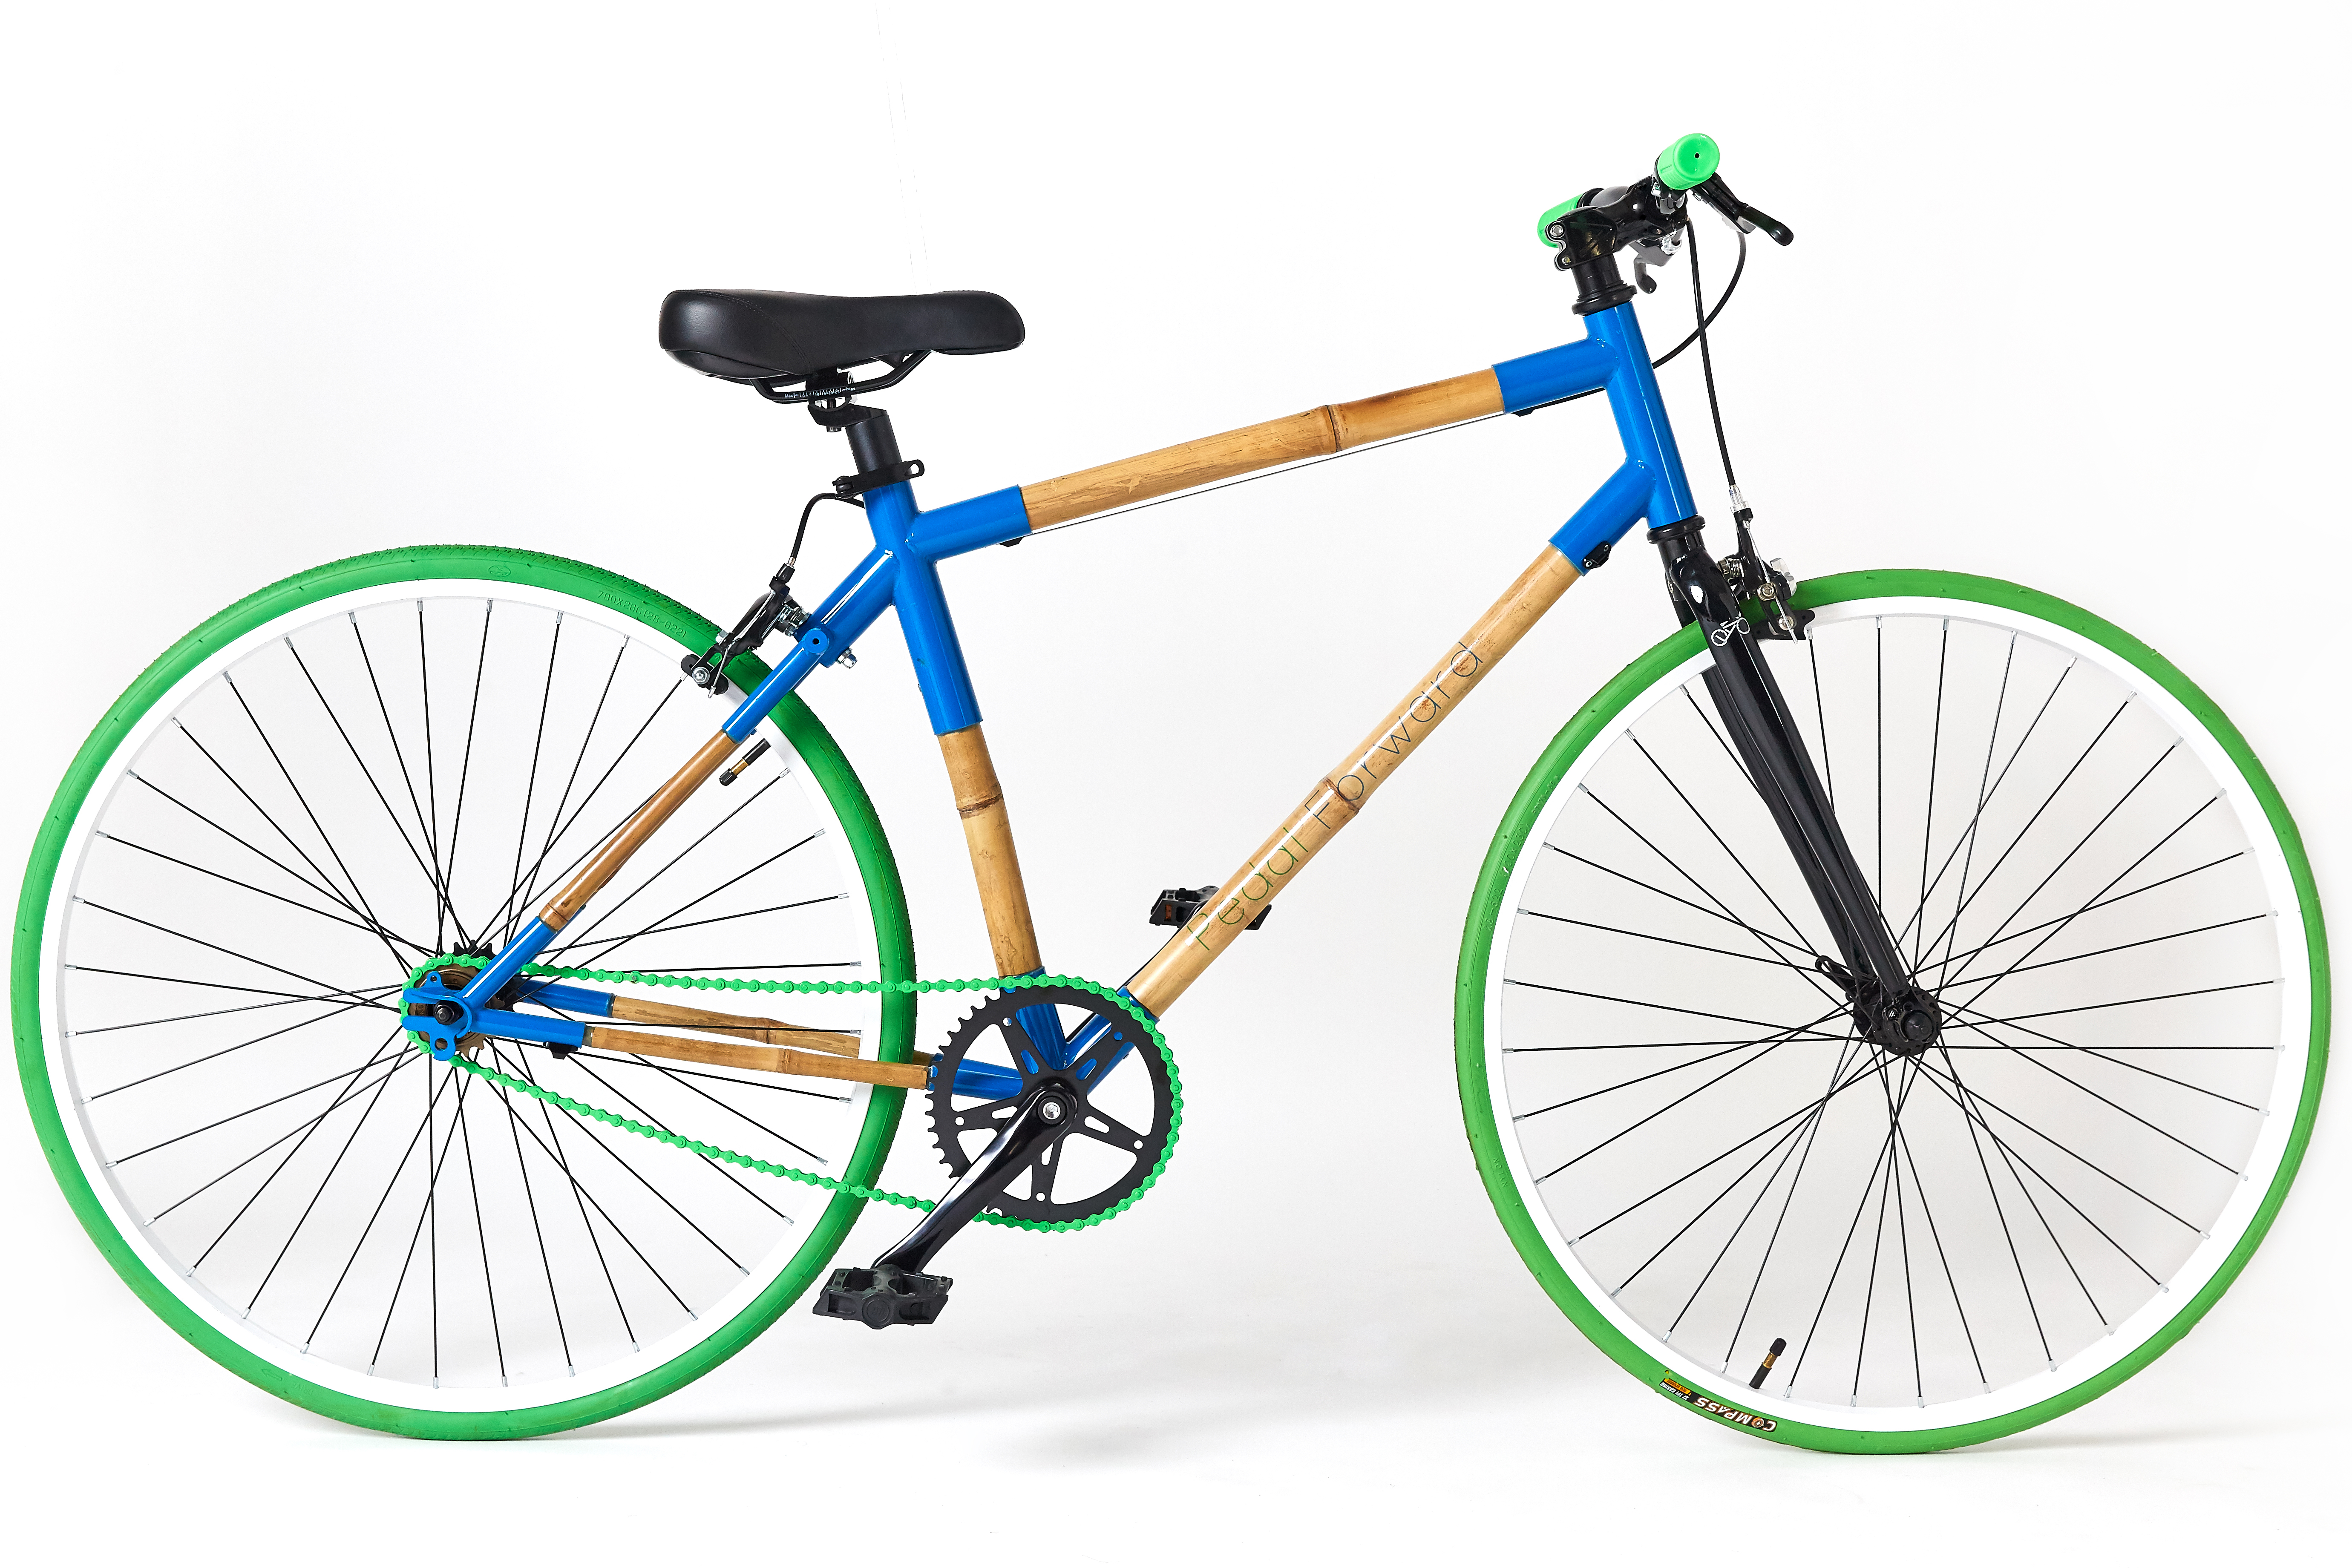 Pedal Forward » The Classic Bamboo Bike